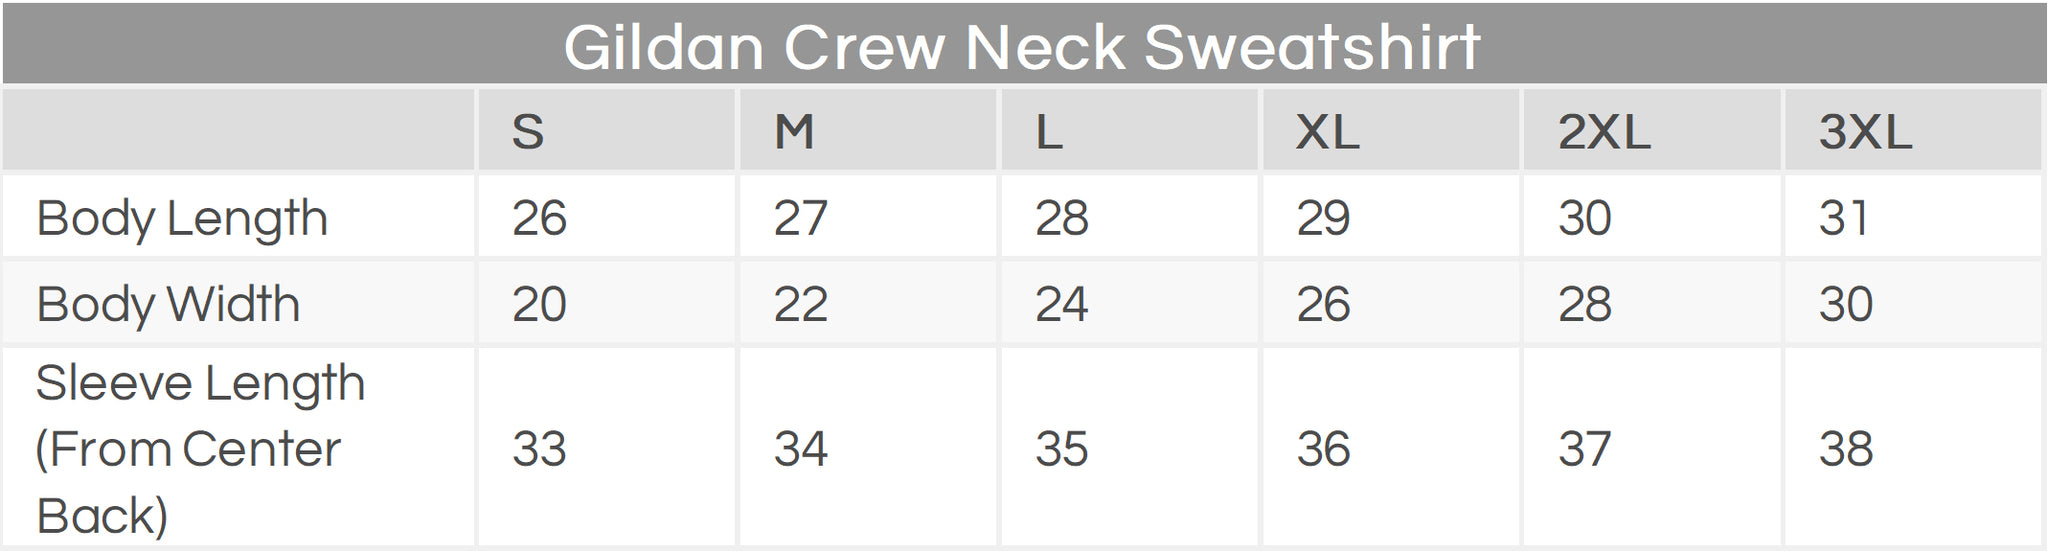 Gildan Crew Neck Sweatshirt Size Chart